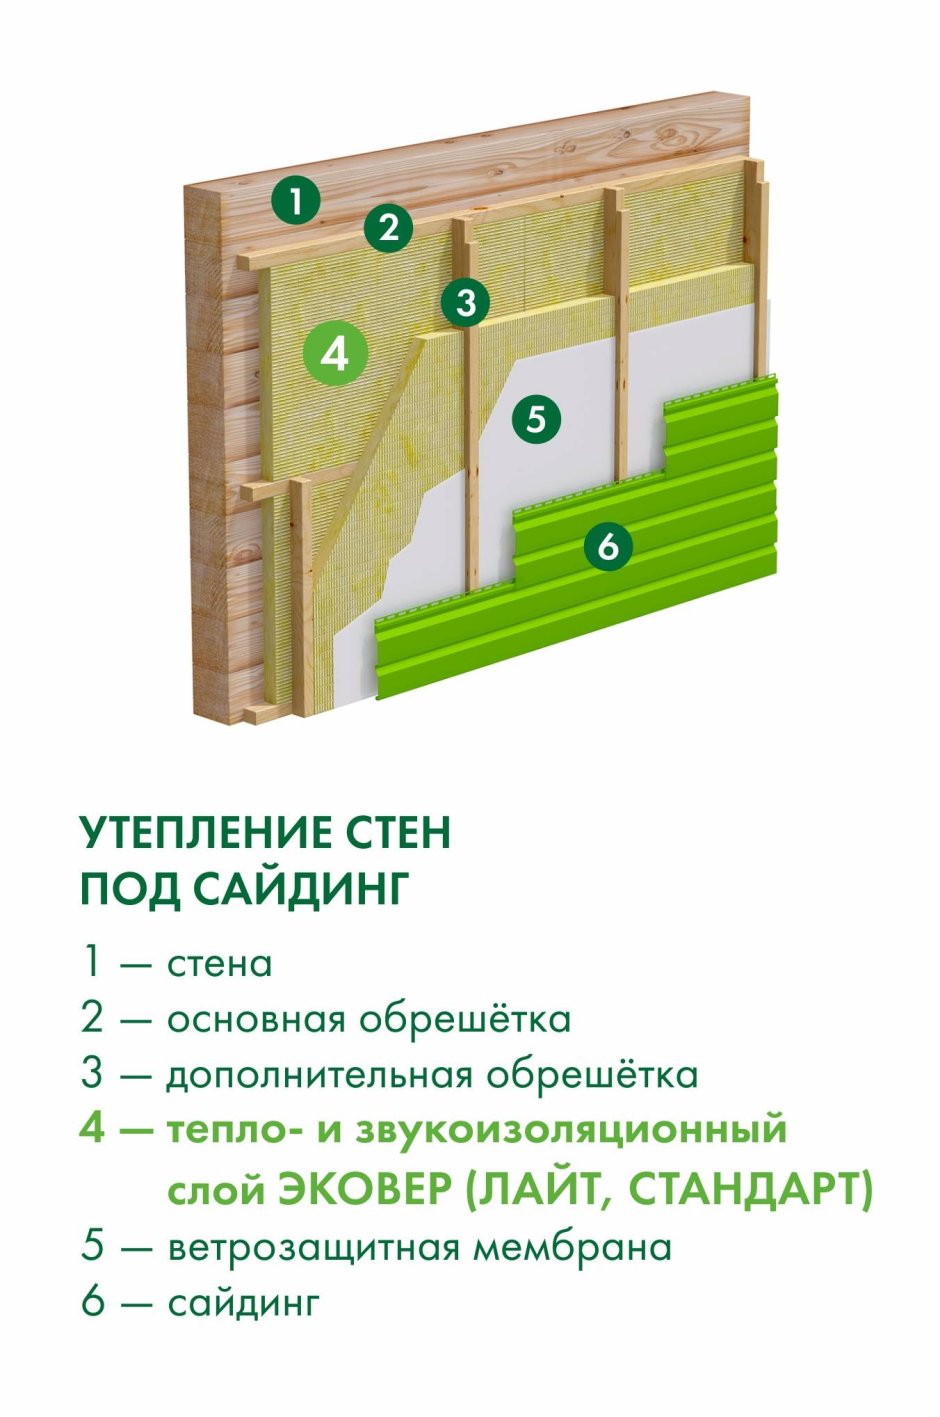 Схема утепления деревянного дома снаружи минватой под сайдинг